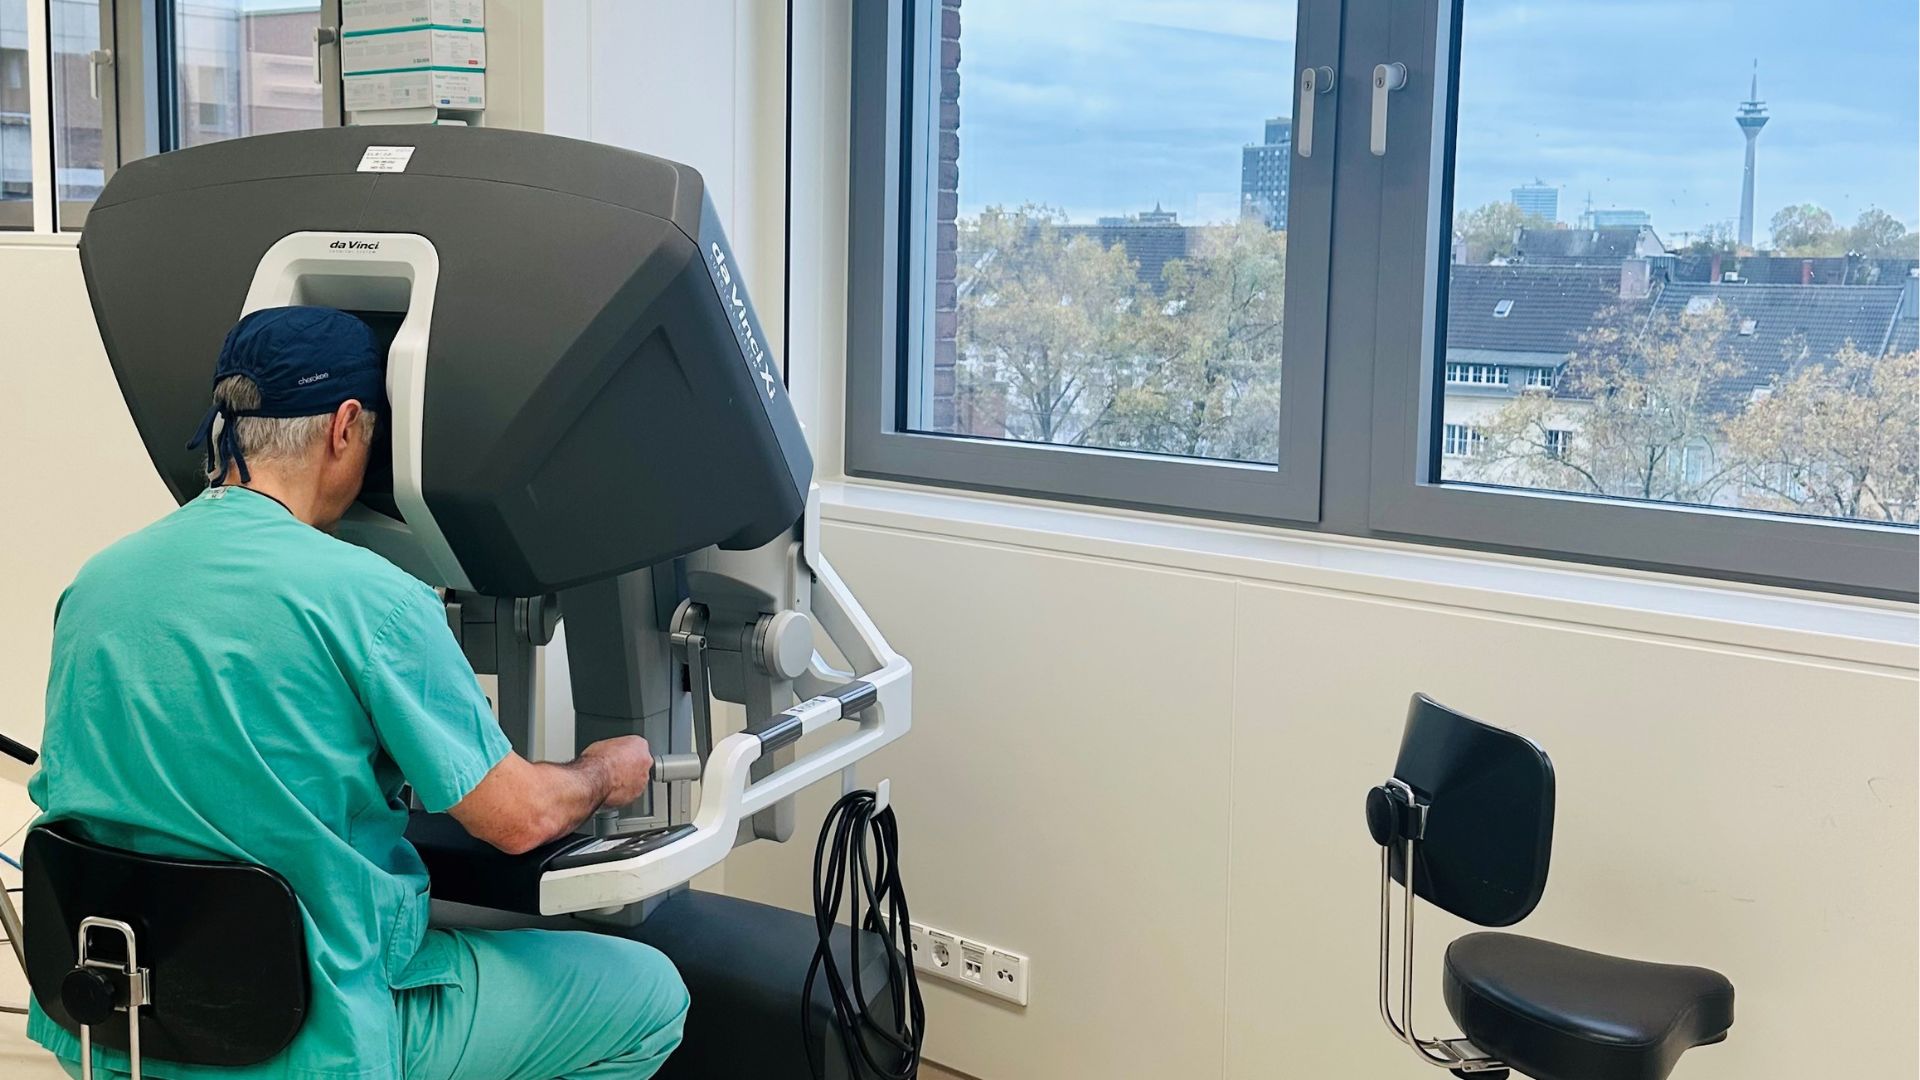 Der Chirurg sitzt im OP-Saal am Da Vinci OP-Roboter und bedient ihn währen einer Operation. Im Hintergrund sieht man durch die Fenster über die Stadt Düsseldorf.